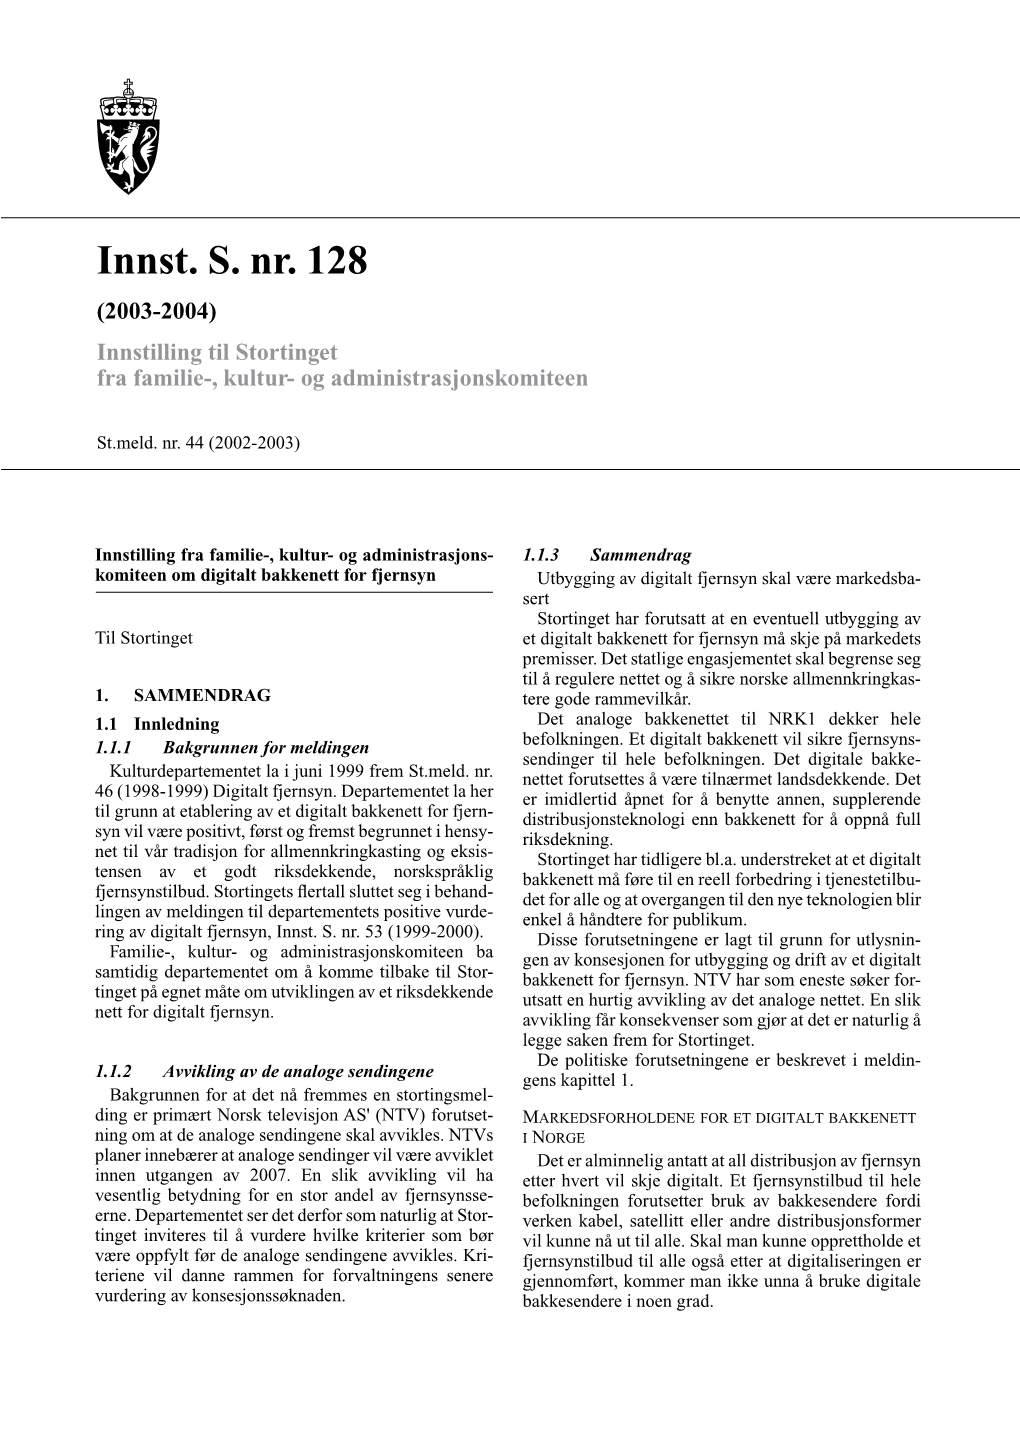 Innst. S. Nr. 128 (2003-2004) Innstilling Til Stortinget Fra Familie-, Kultur- Og Administrasjonskomiteen